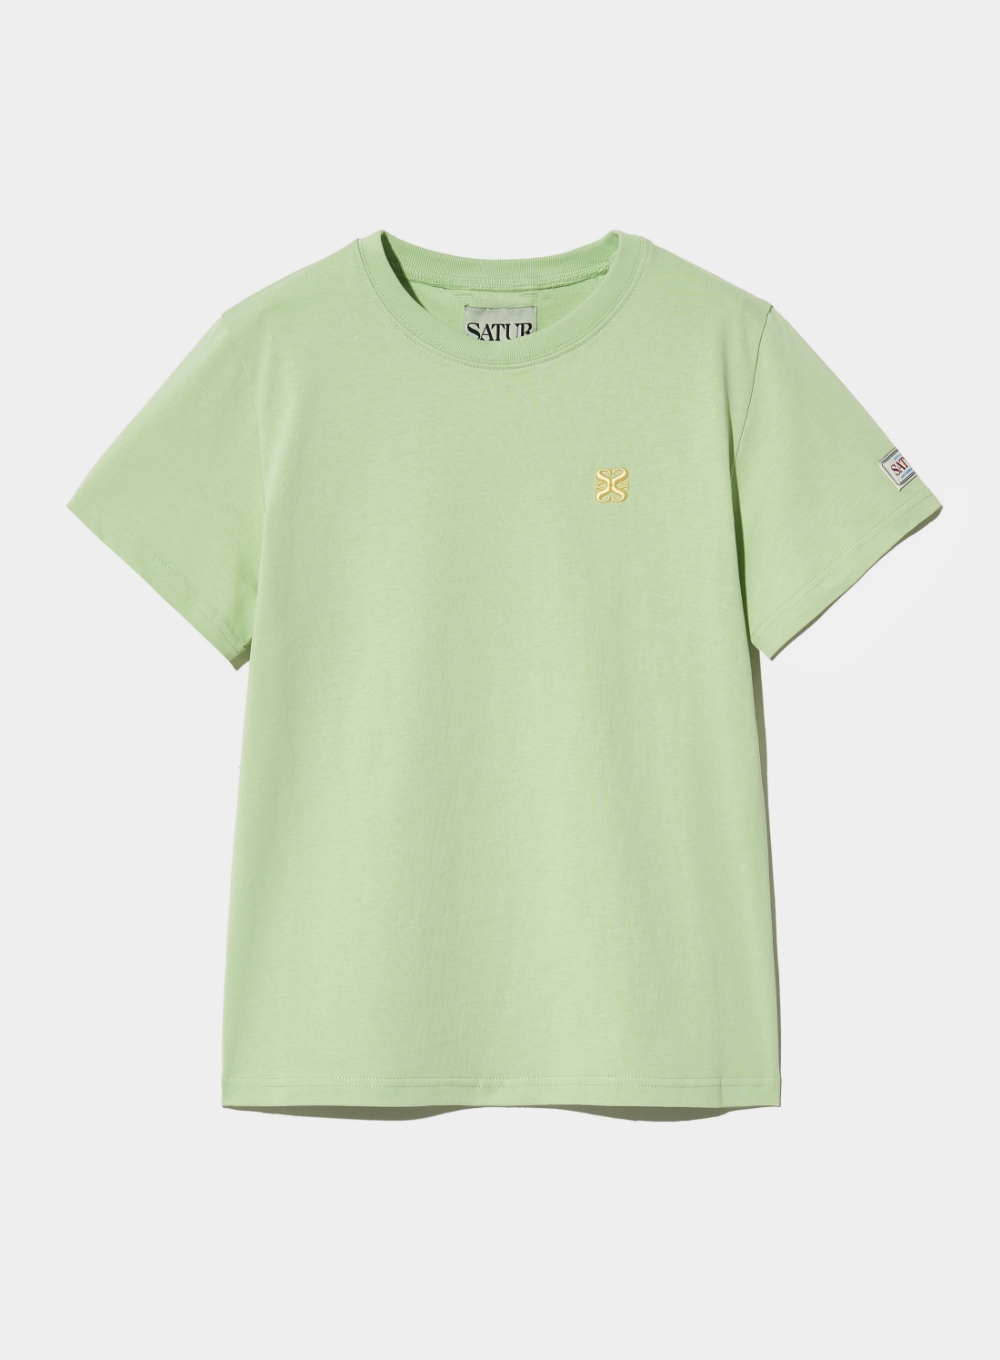 (W) Classic Small Logo T-Shirt - Olive Mint